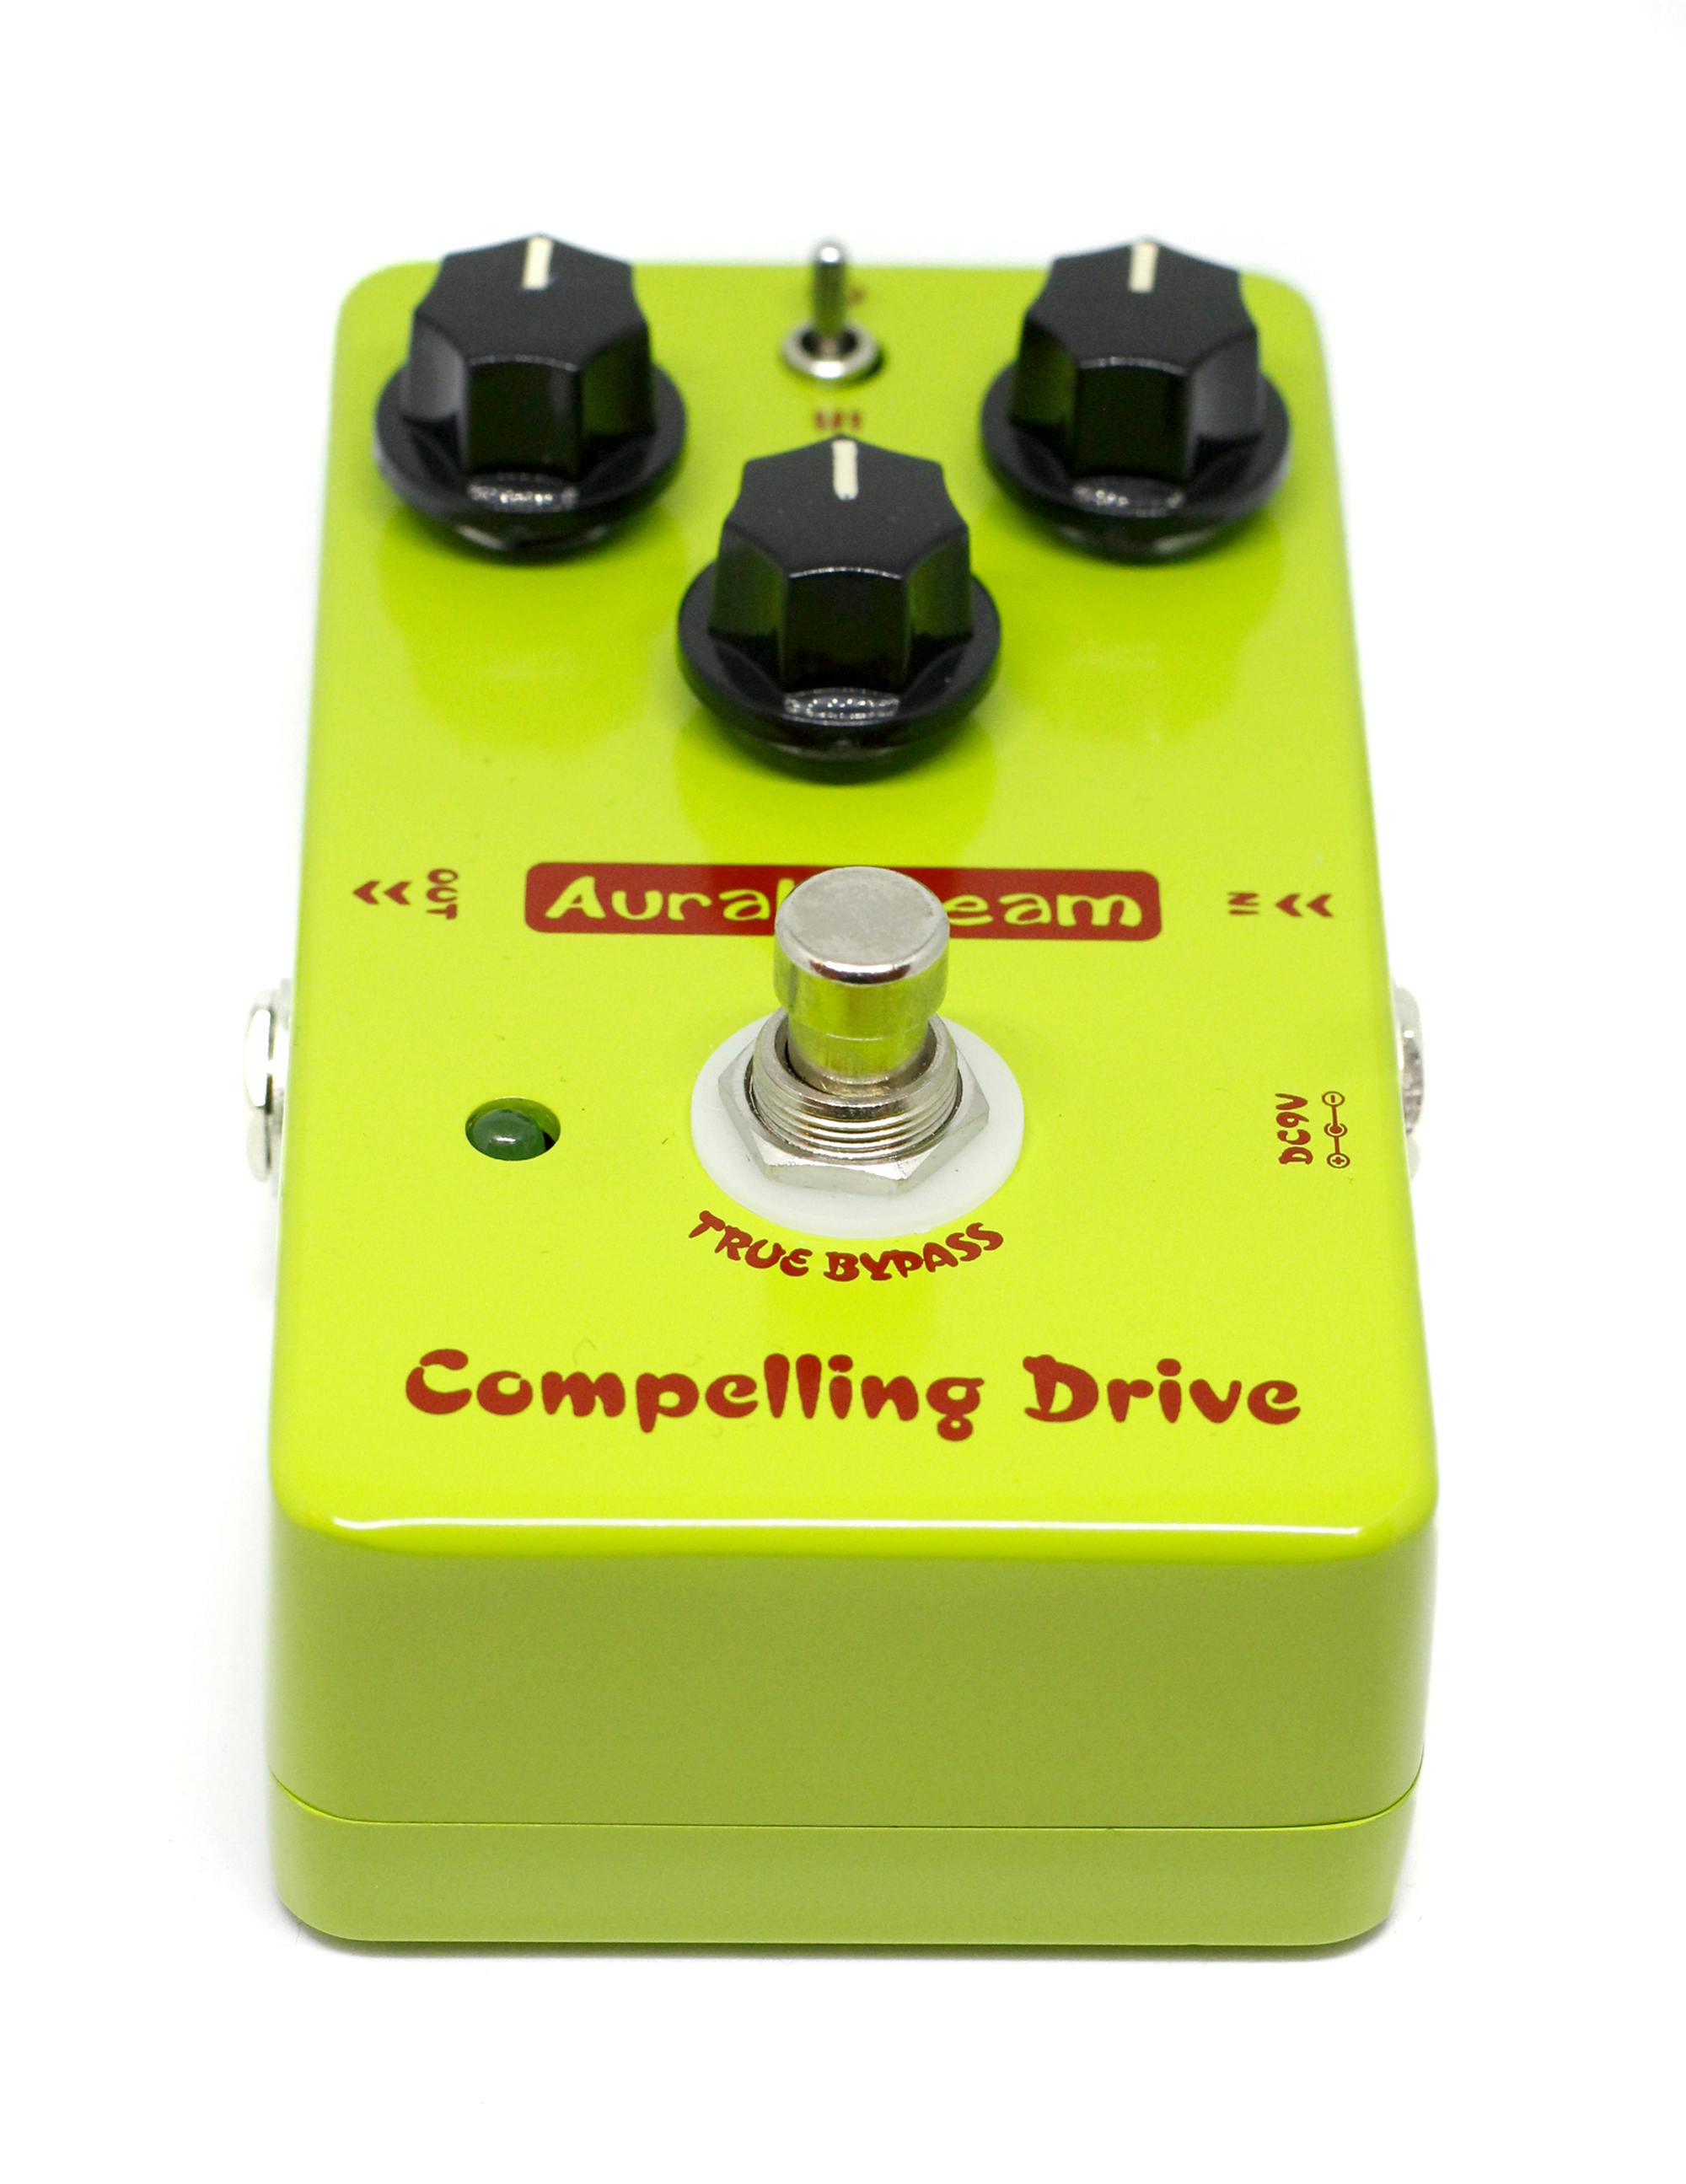 ギター エフェクター コンプドライブ パワフルサウンド 黄緑 Compelling Drive Aural Dream 送料無料 - 楽器、器材